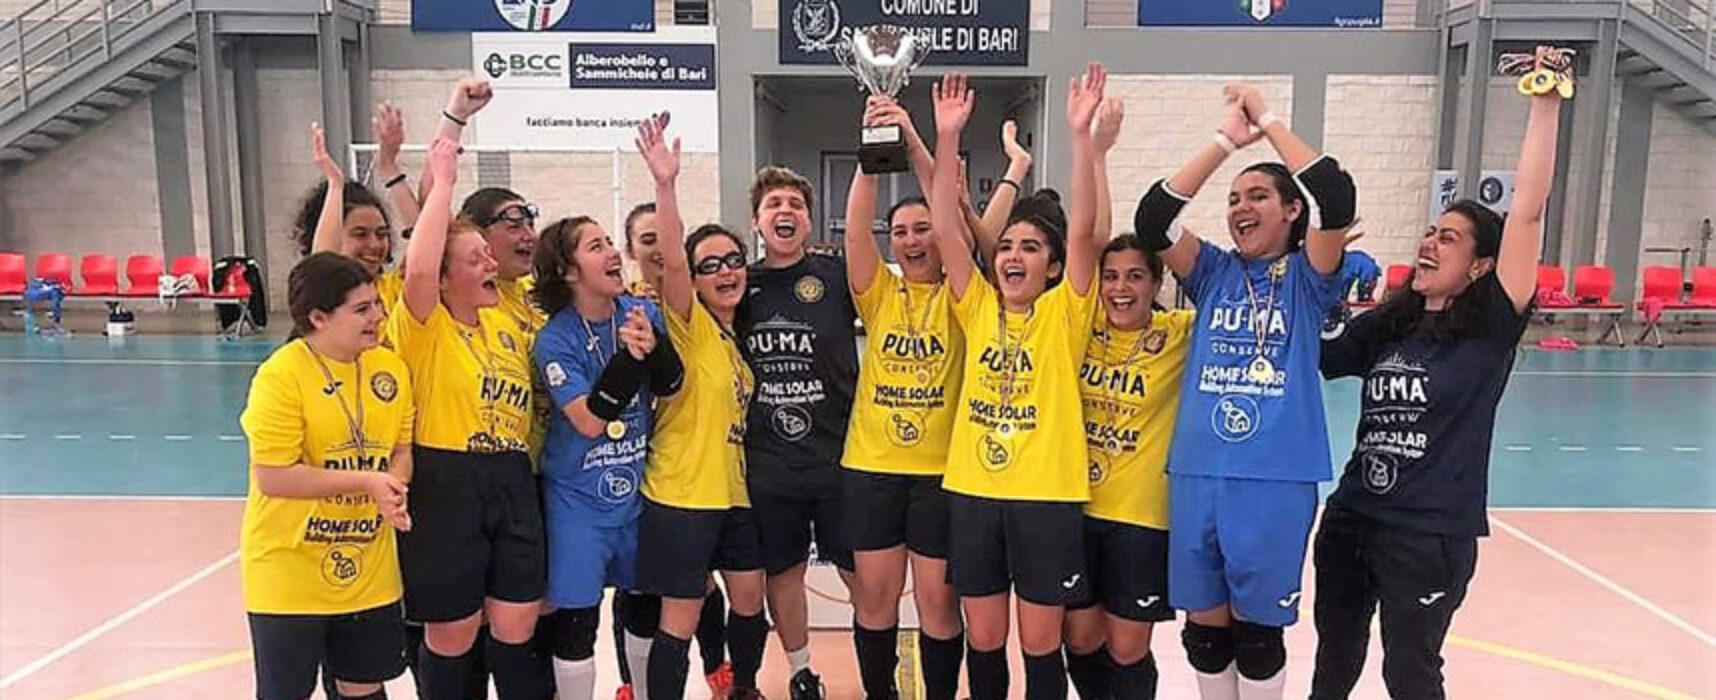 Futsal femminile, il New Bisceglie Girls vince la Coppa Puglia Under 15